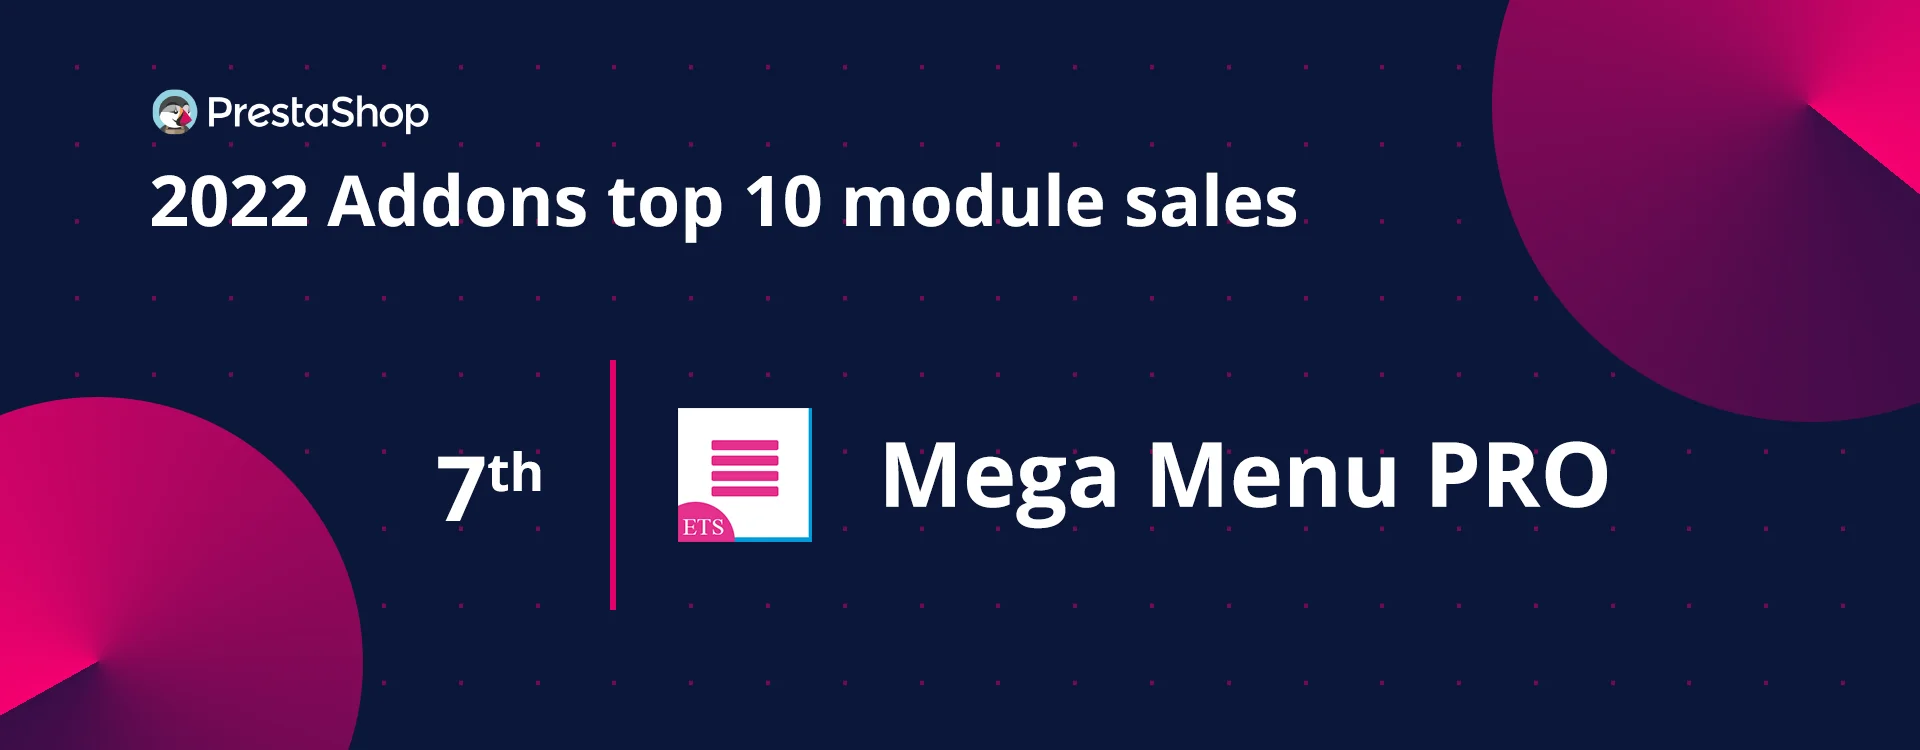 Mega Menu PRO - Top 10 best sellers PrestaShop module in 2022